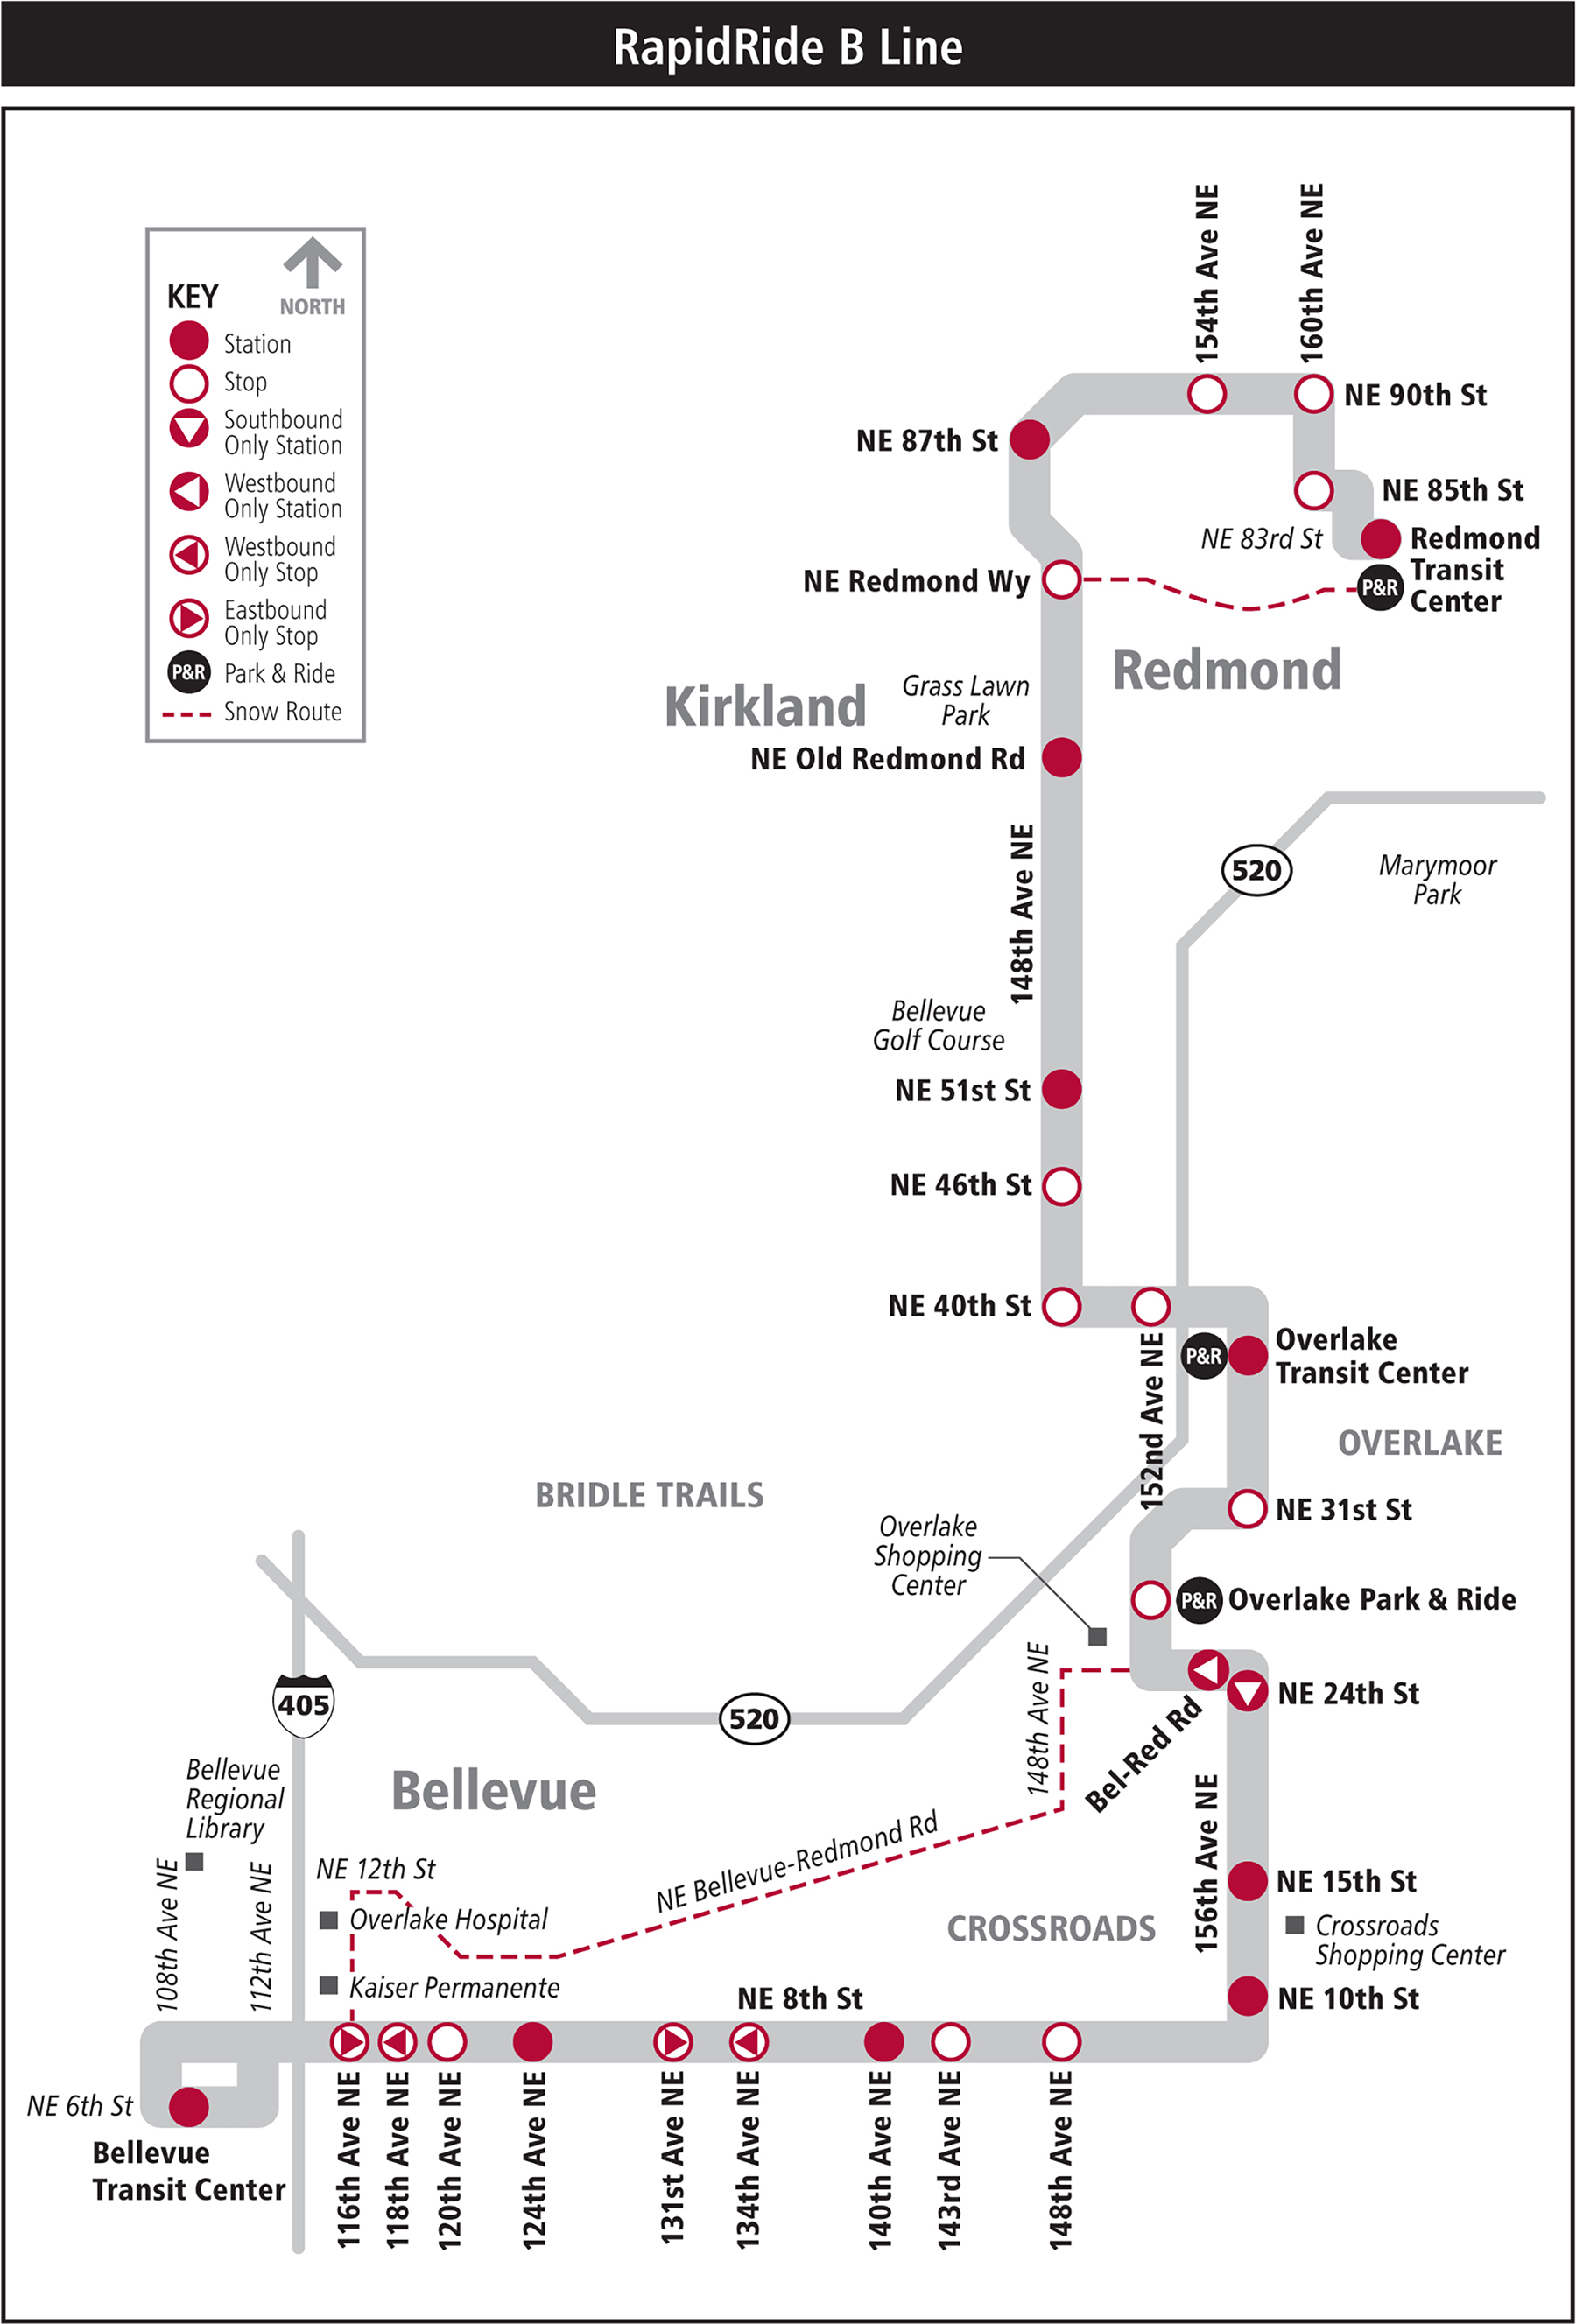 RapidRide B線路線圖